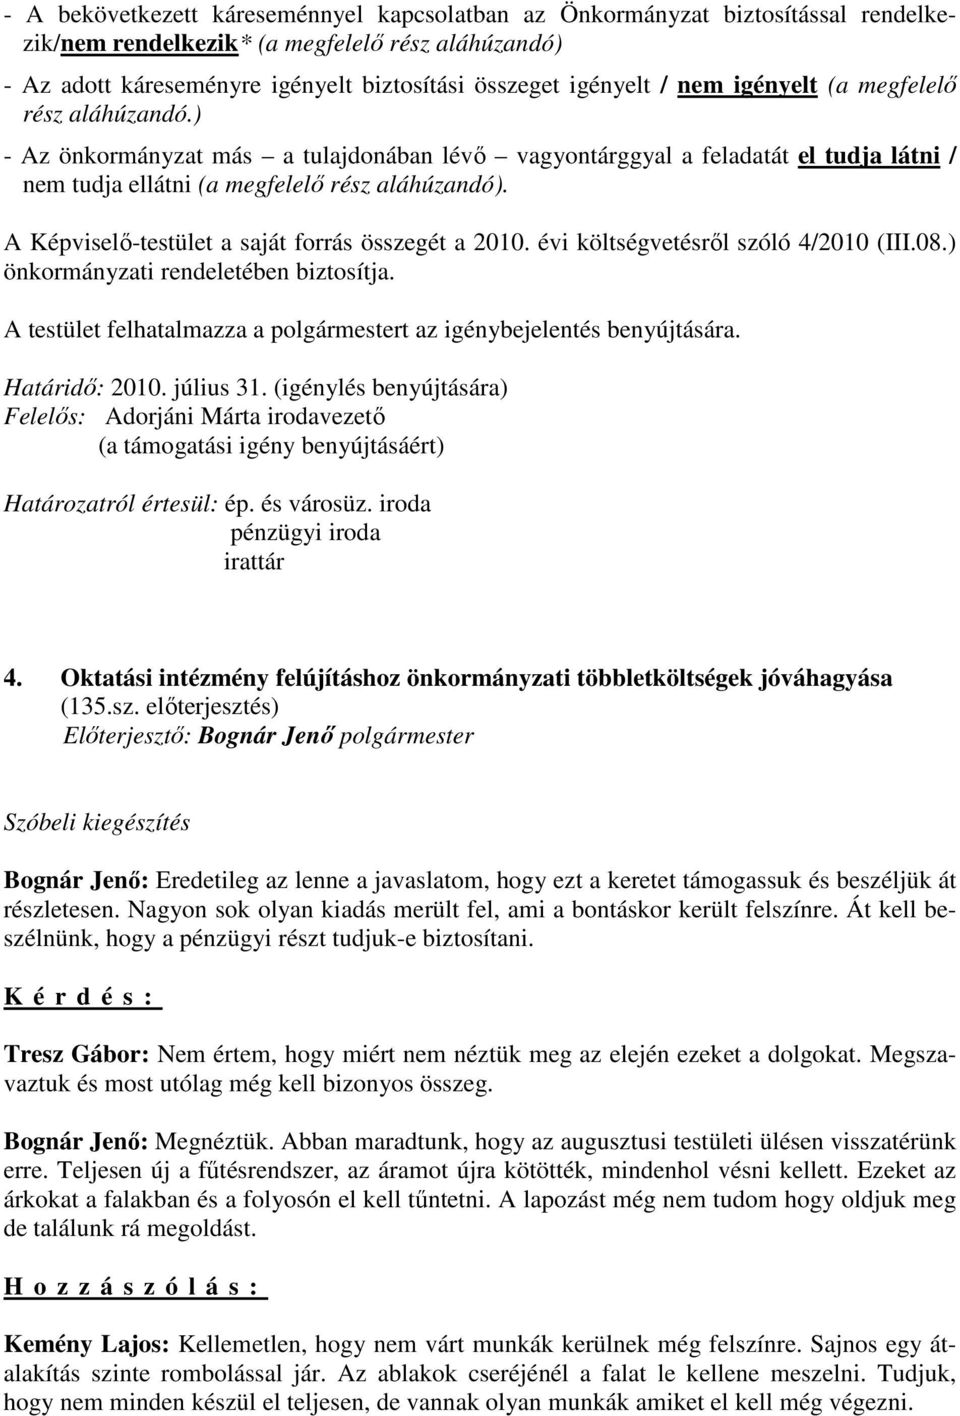 A Képviselı-testület a saját forrás összegét a 2010. évi költségvetésrıl szóló 4/2010 (III.08.) önkormányzati rendeletében biztosítja.